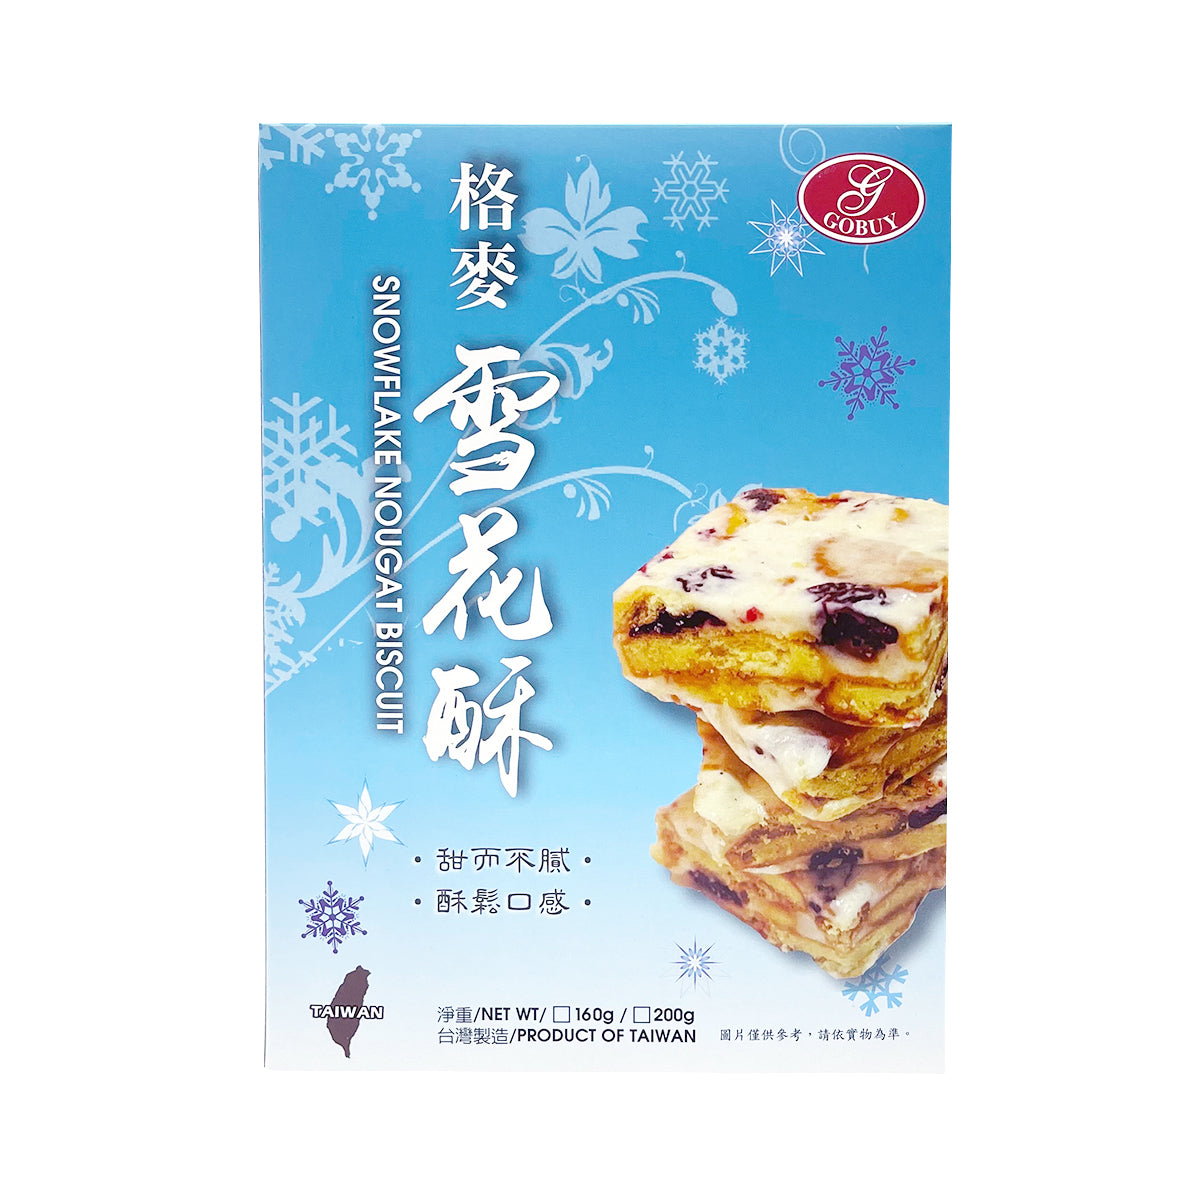 台灣格麥蛋糕 GOBUY CAKE 健康烘焙金牌獎 牛軋雪花酥餅 200g 10入